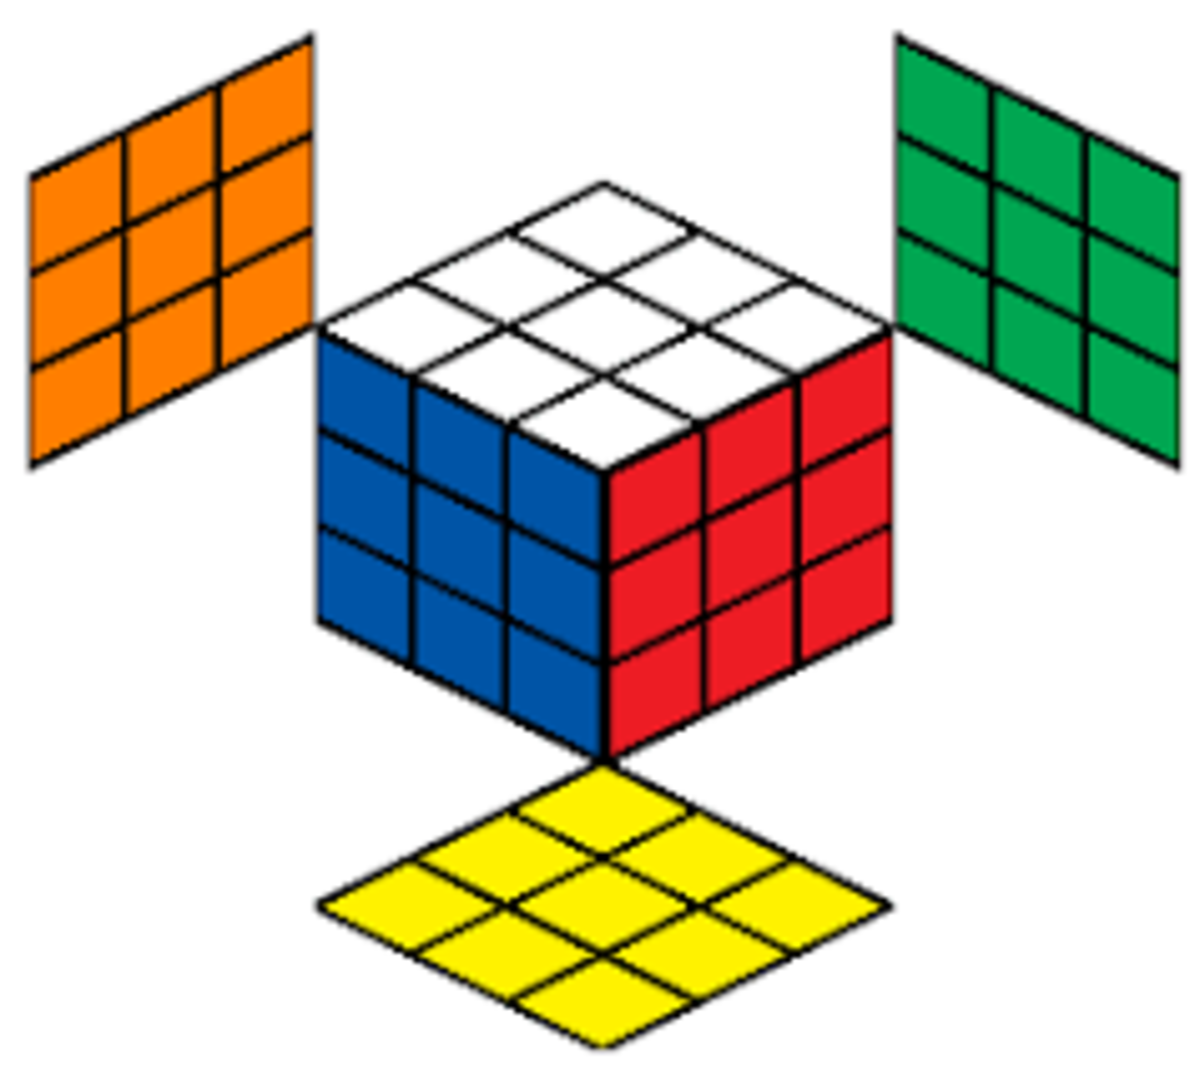 Бесконечные возможности для творчества, открытые с помощью кубика Рубика